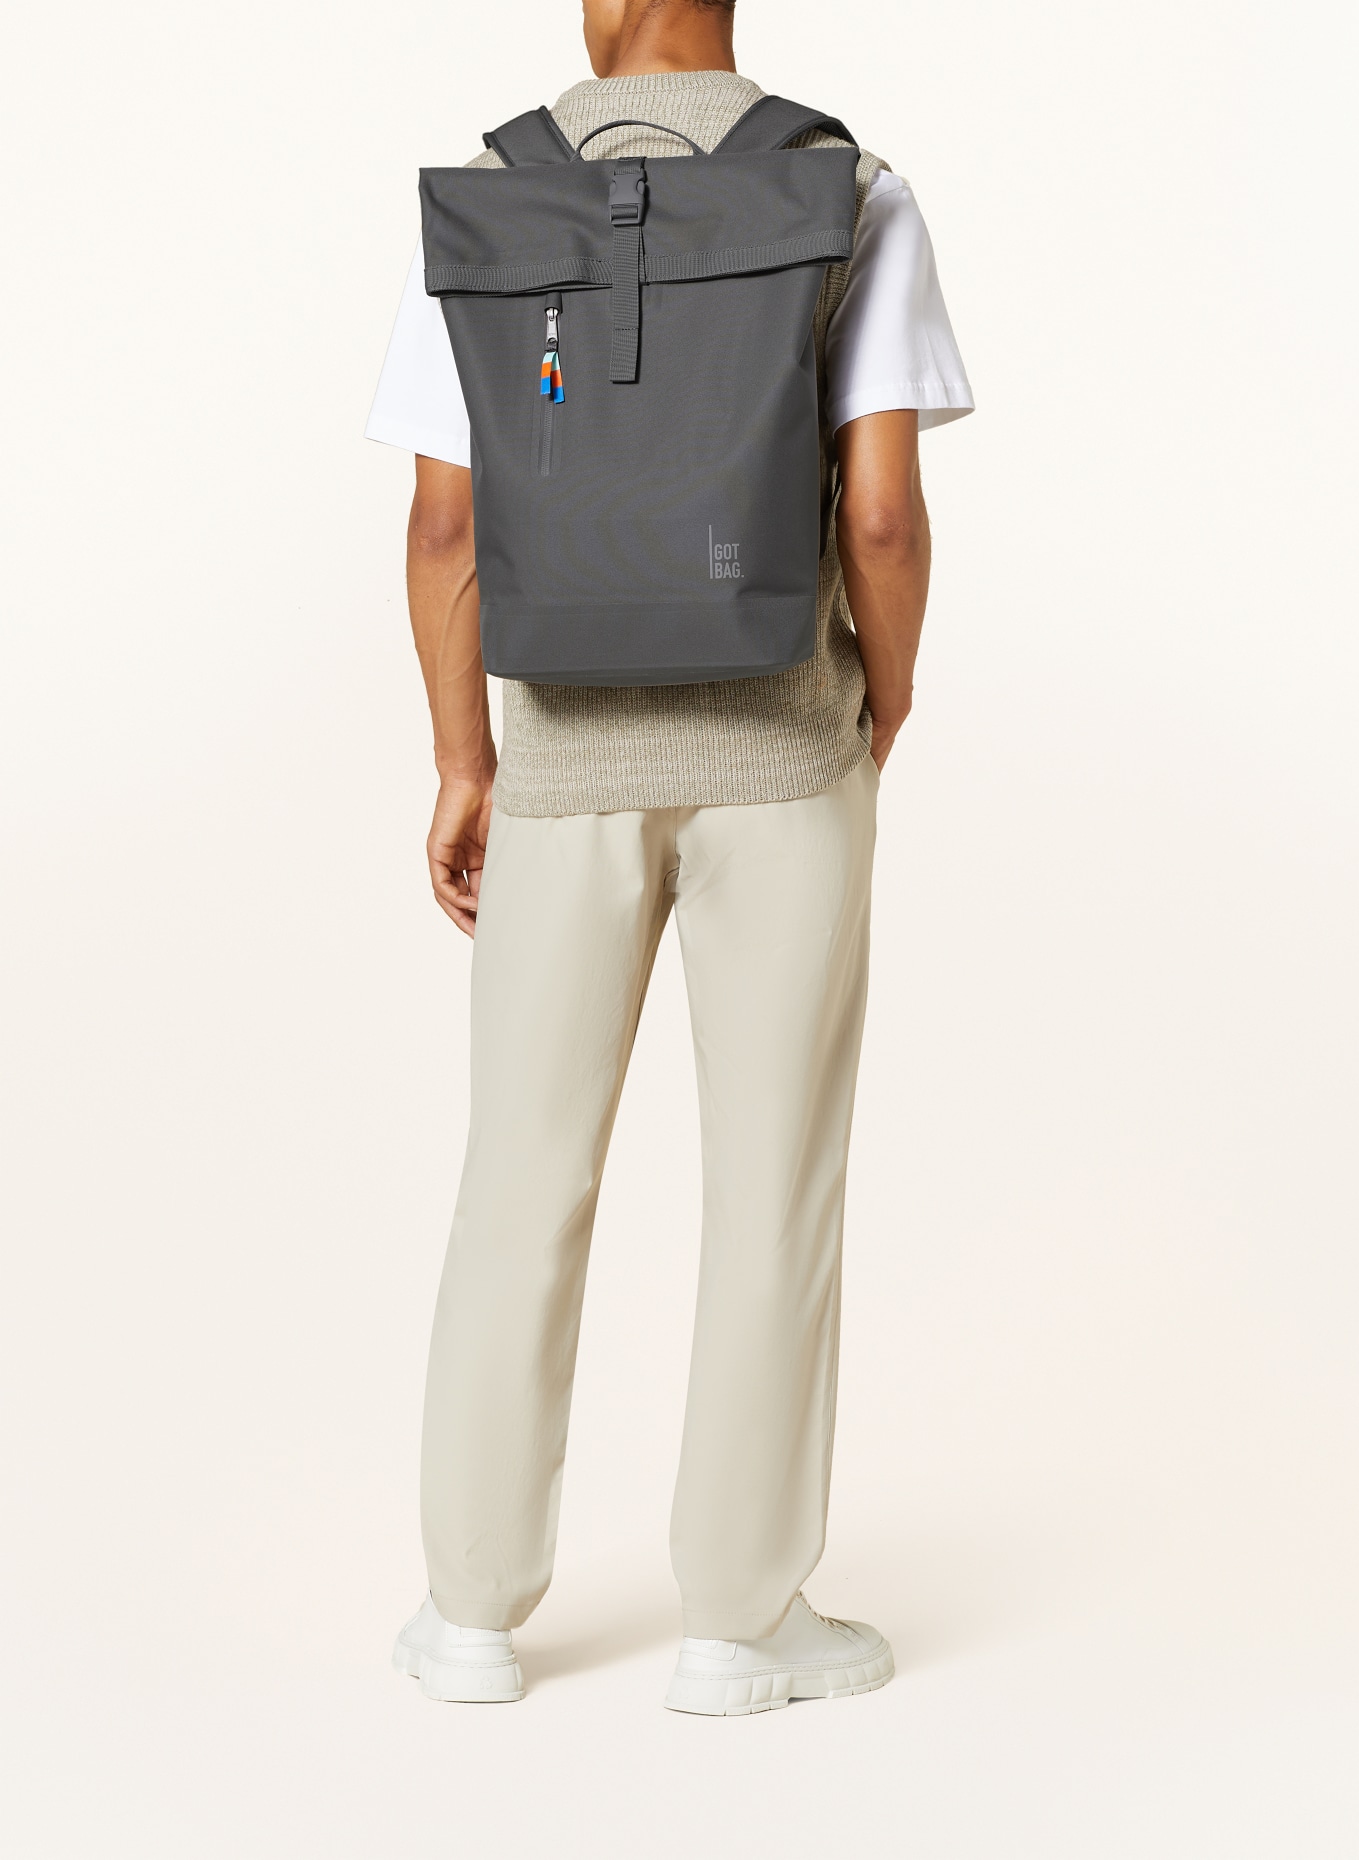 GOT BAG Backpack ROLLTOP LITE 2.0, Color: DARK GRAY (Image 4)